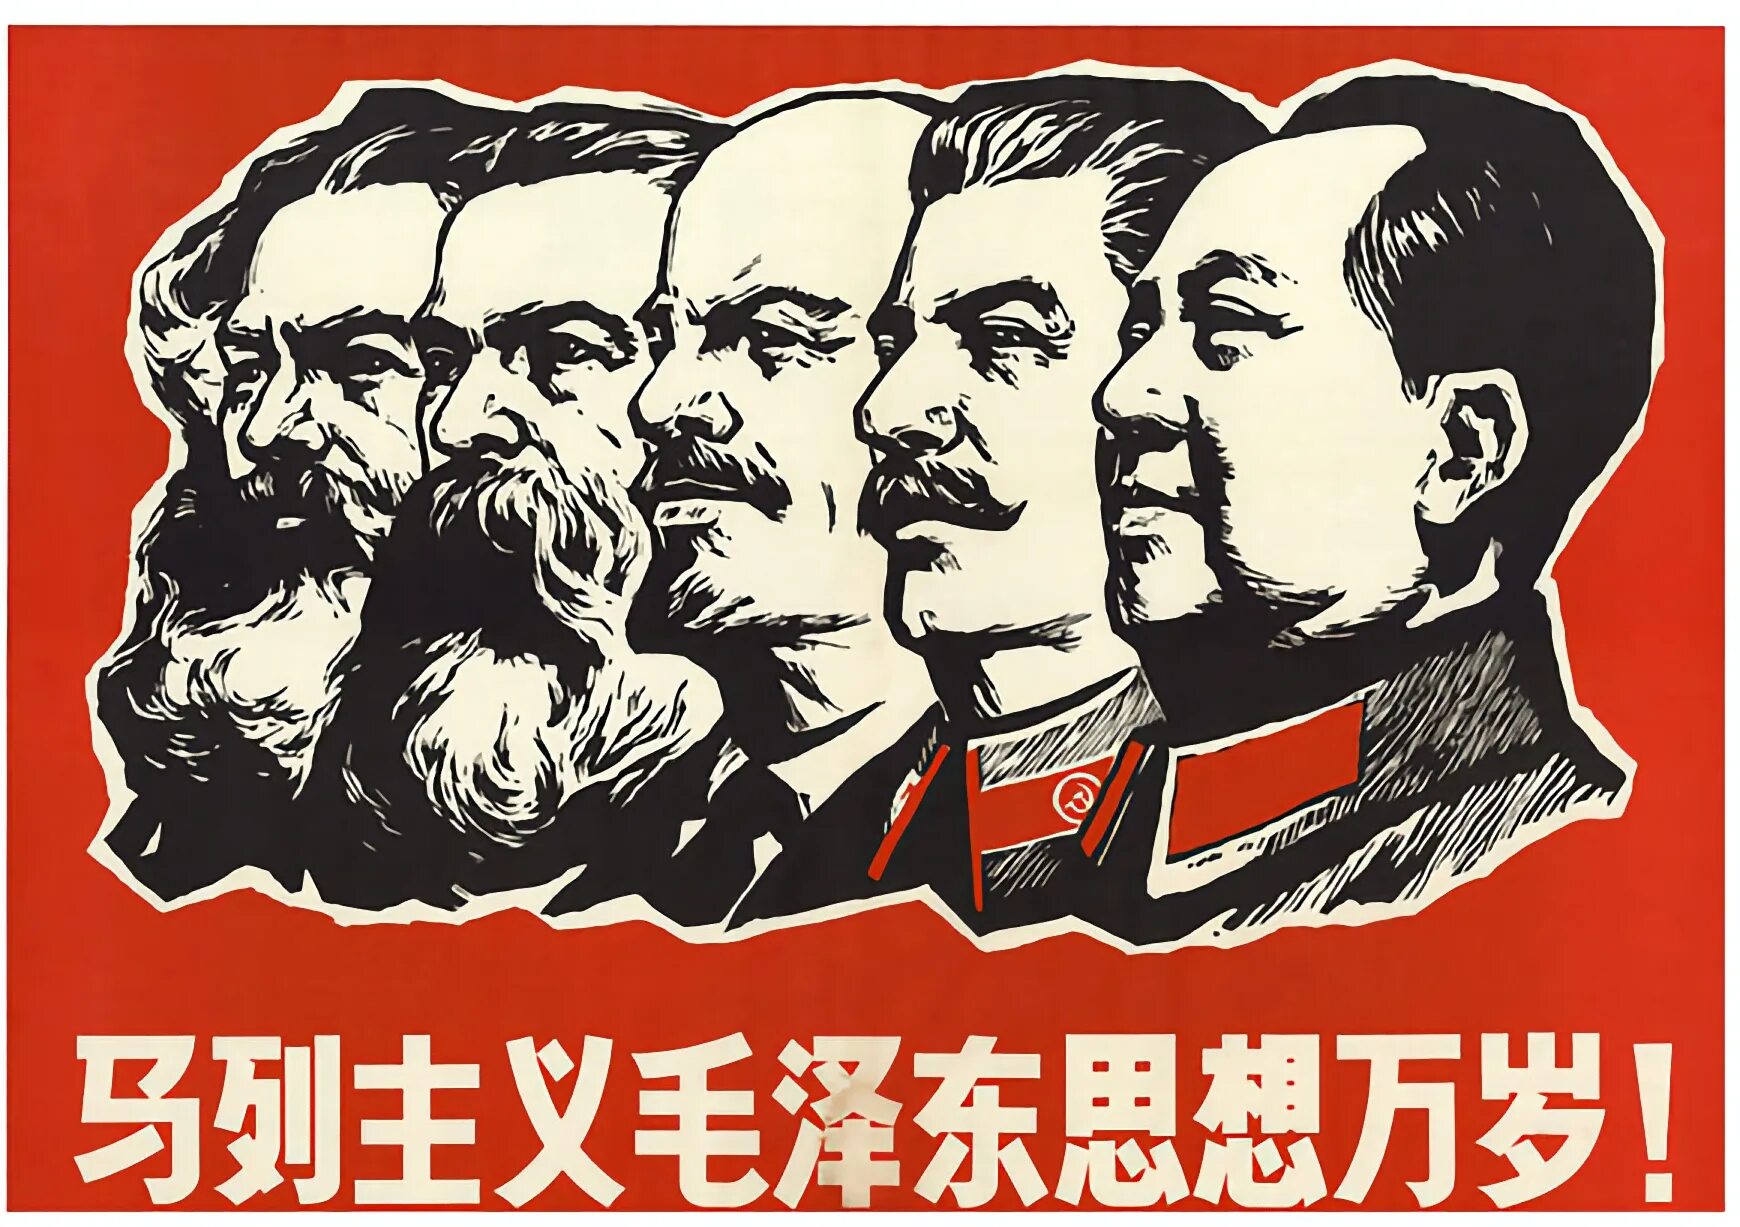 Энгельс ленин сталин. Маркс Энгельс Ленин Сталин Мао. Маркс Ленин Сталин Мао Цзэдун. Маркс Энгельс Ленин Сталин Мао плакат. Ленин Маркс Энгельс Цзэдун.